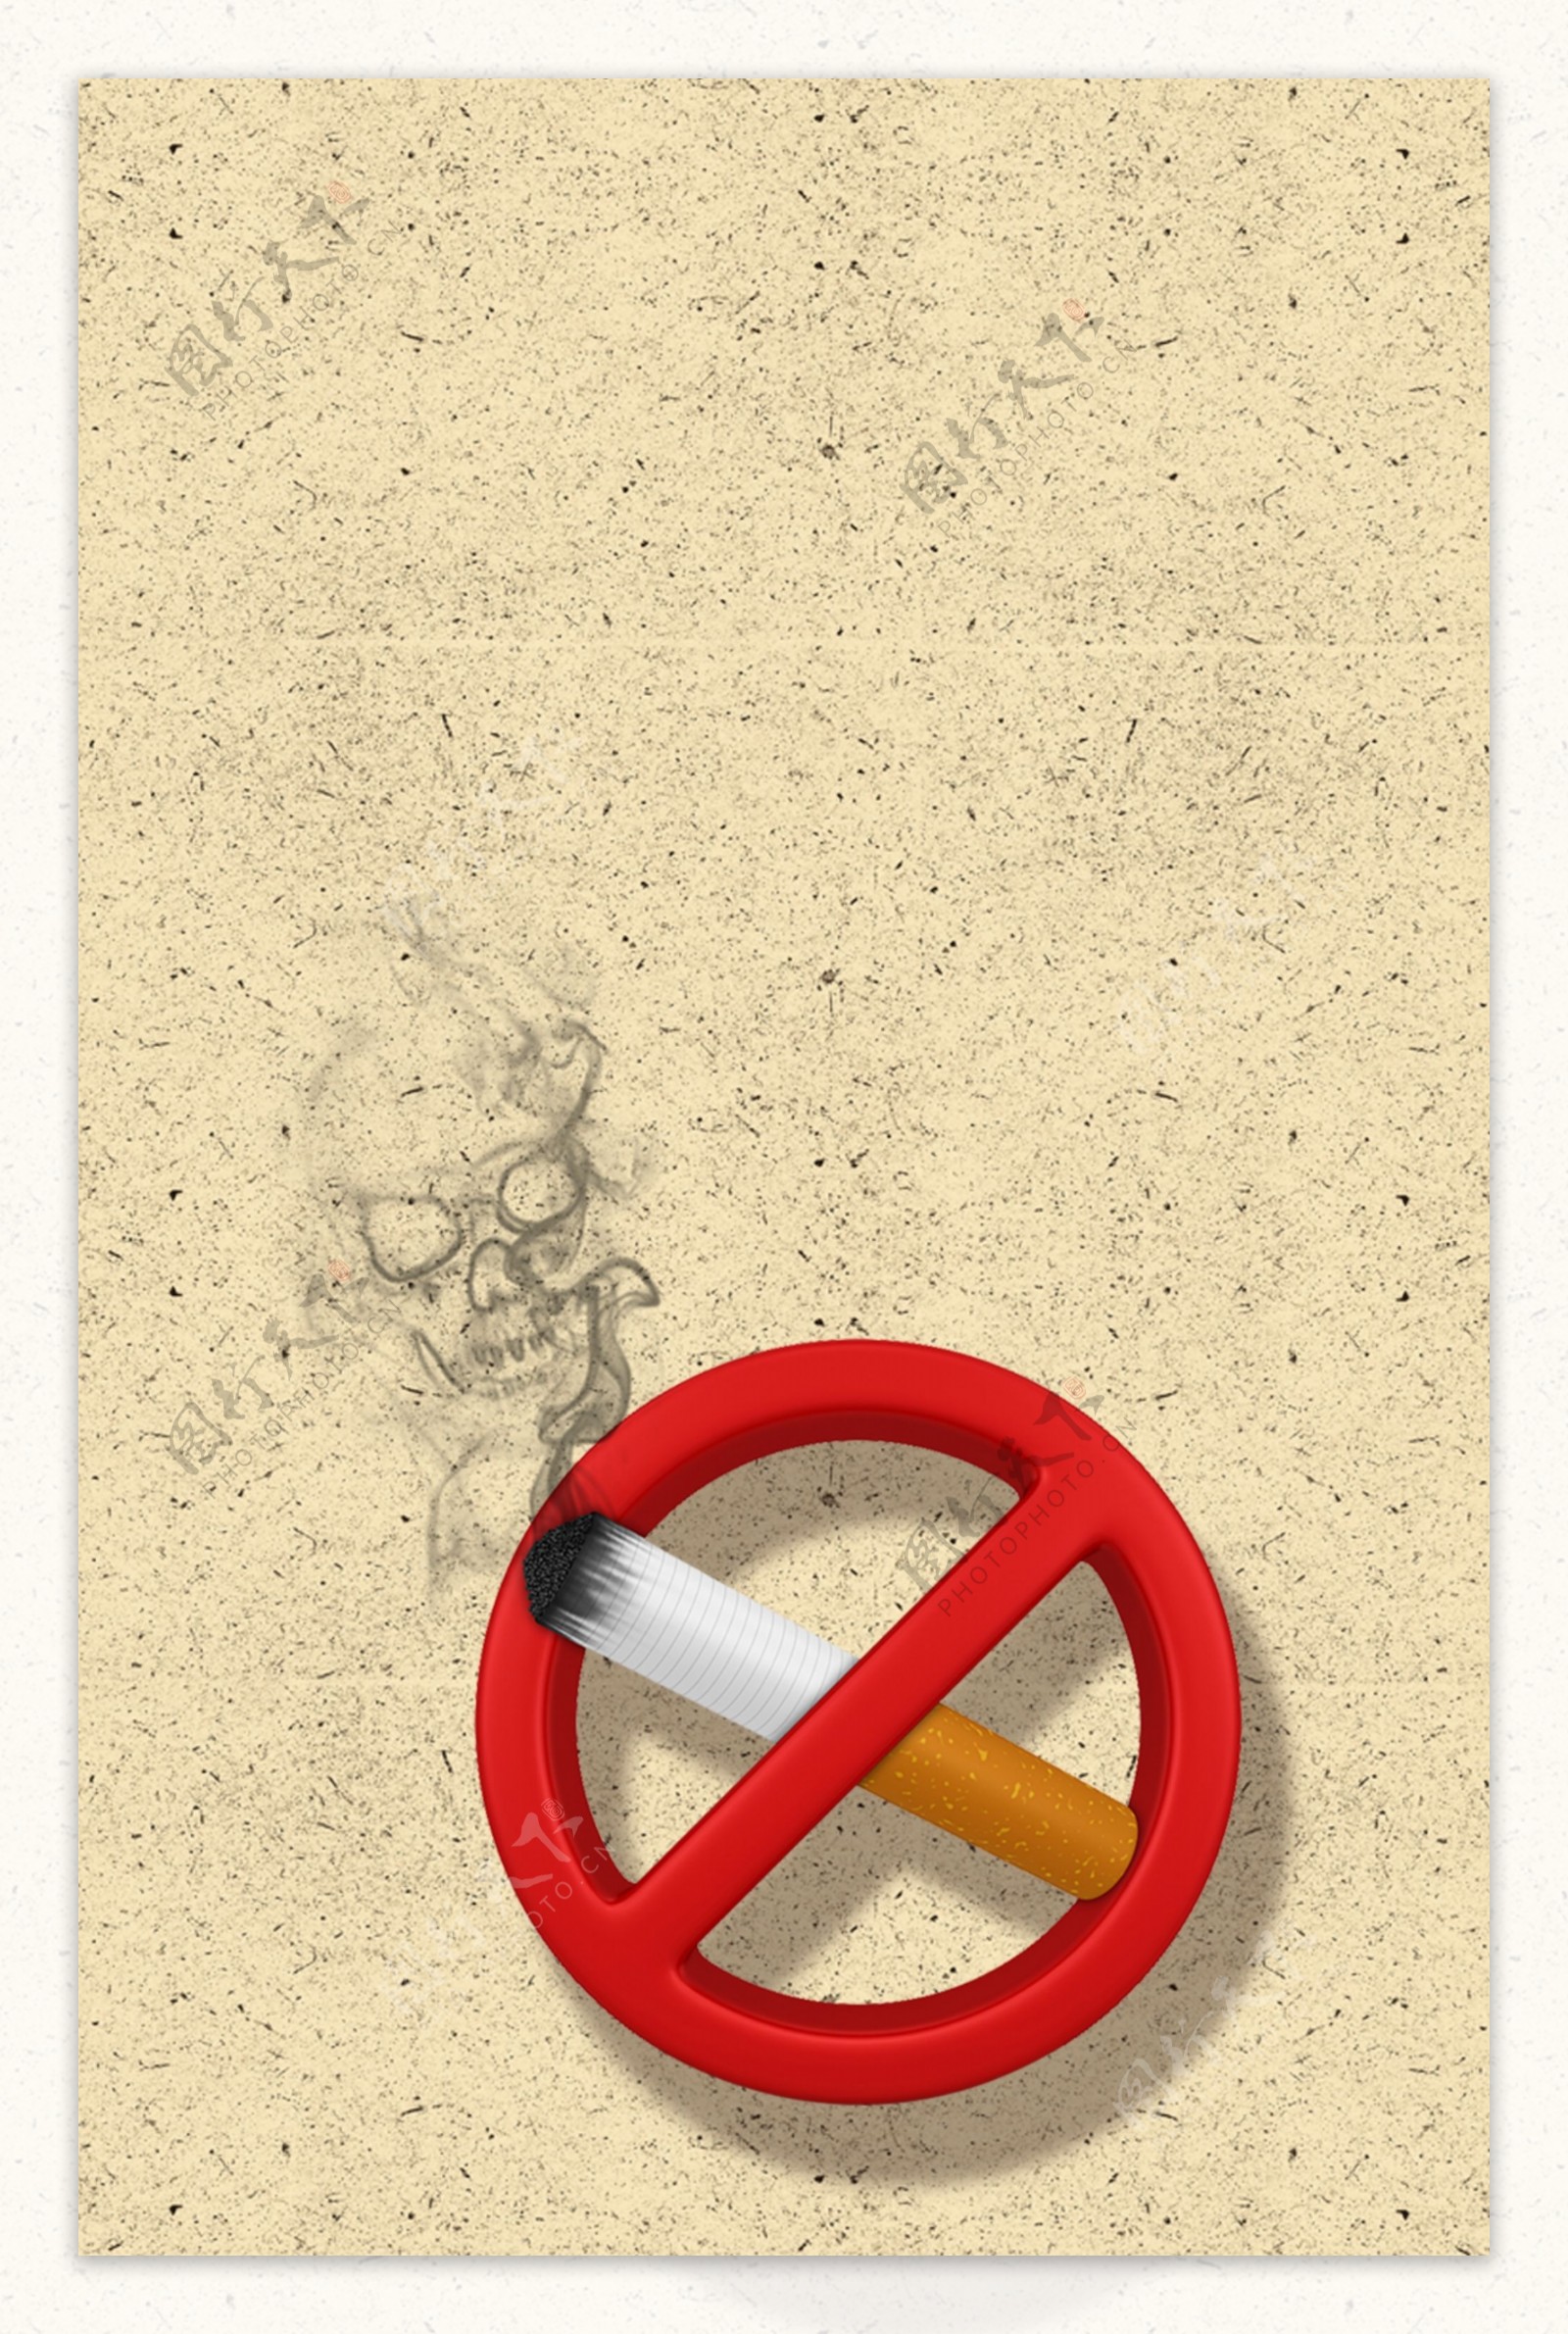 吸烟有害健康禁止吸烟插画背景